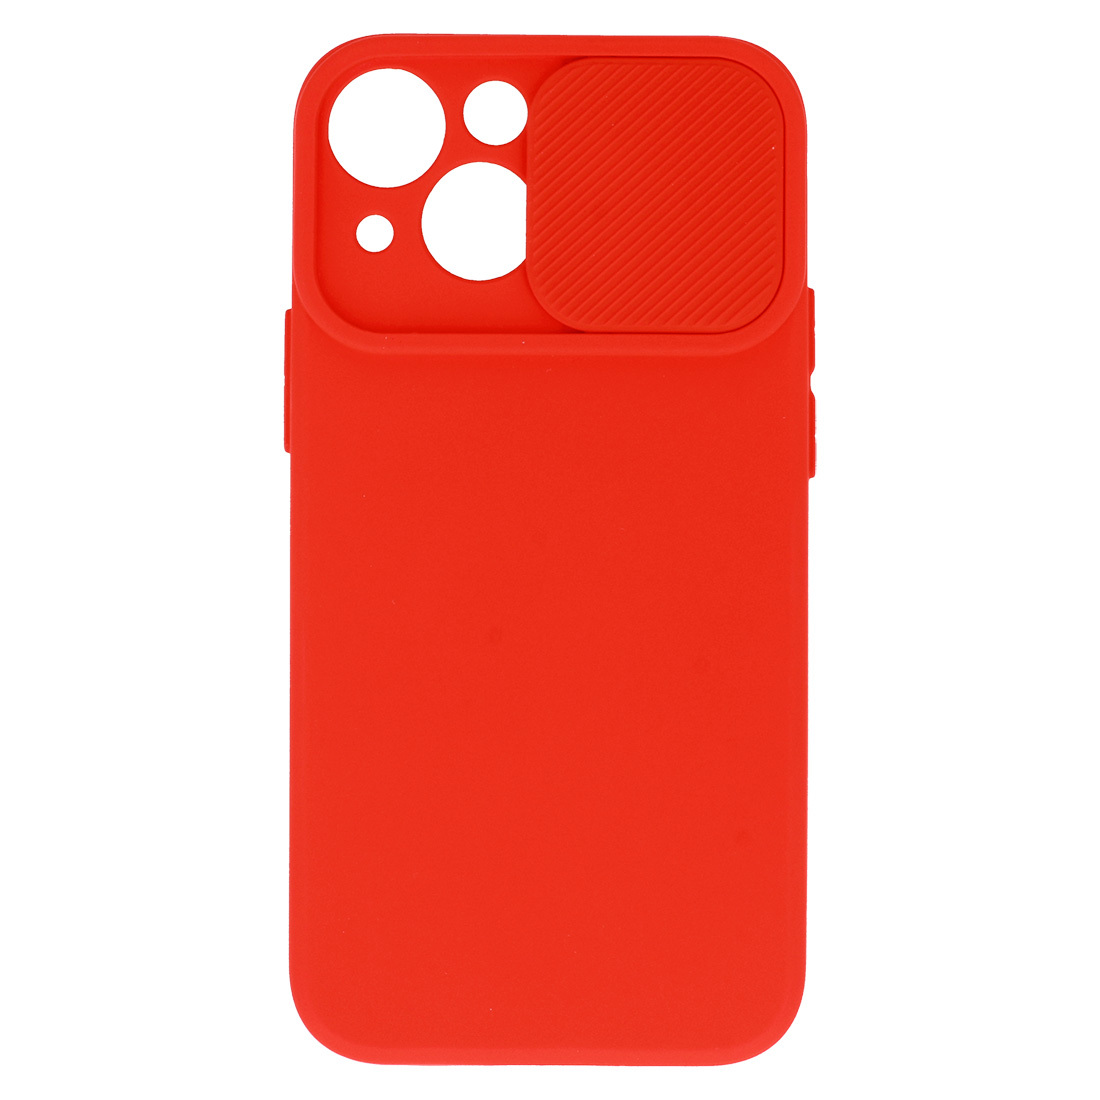 Pokrowiec etui z elastycznego TPU Camshield Soft Case czerwone APPLE iPhone X / 4